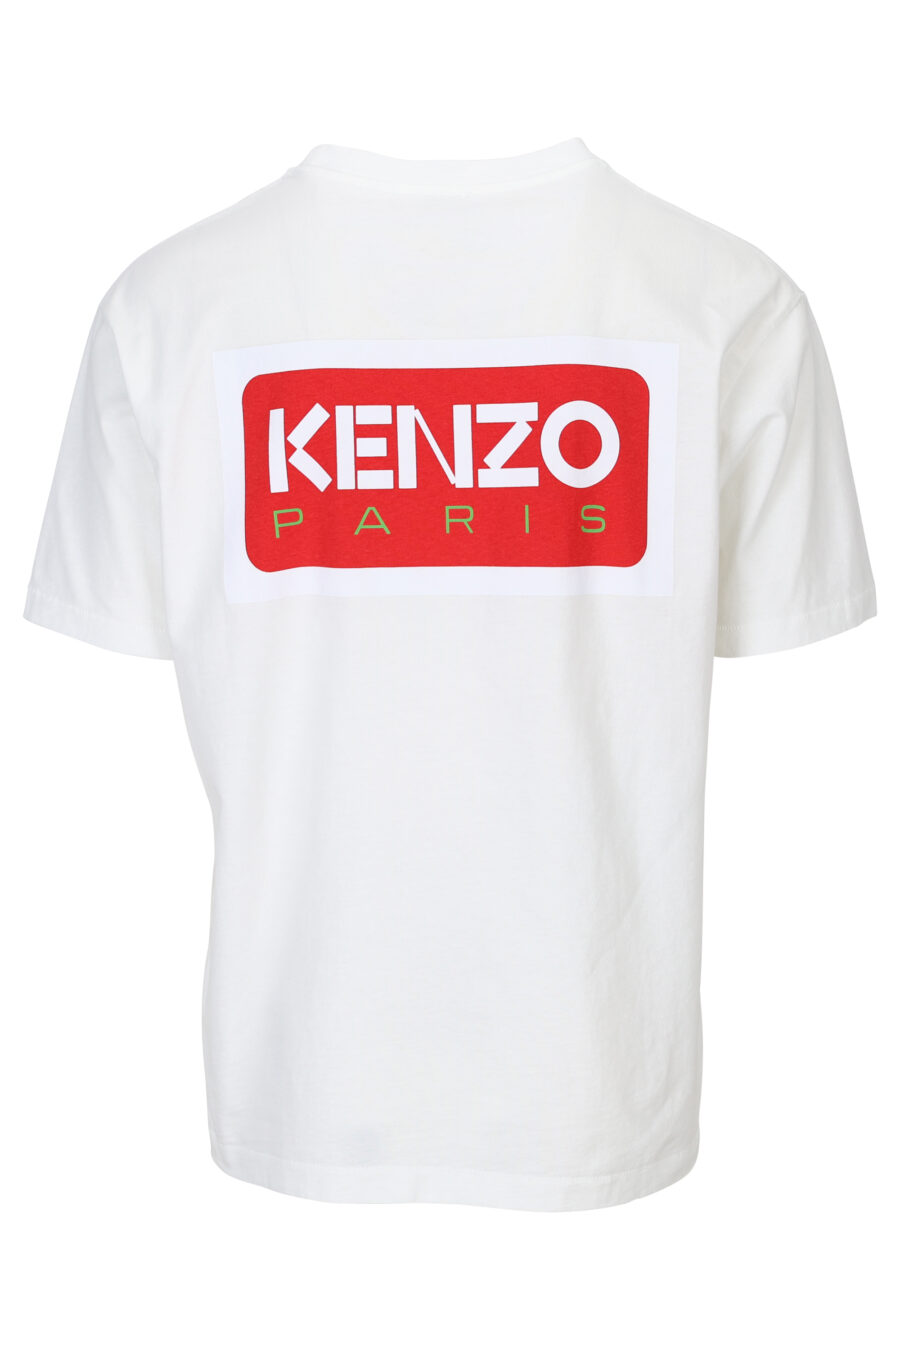 T-shirt blanc avec maxilogo "kenzo paris" dans le dos - 3612230543140 1